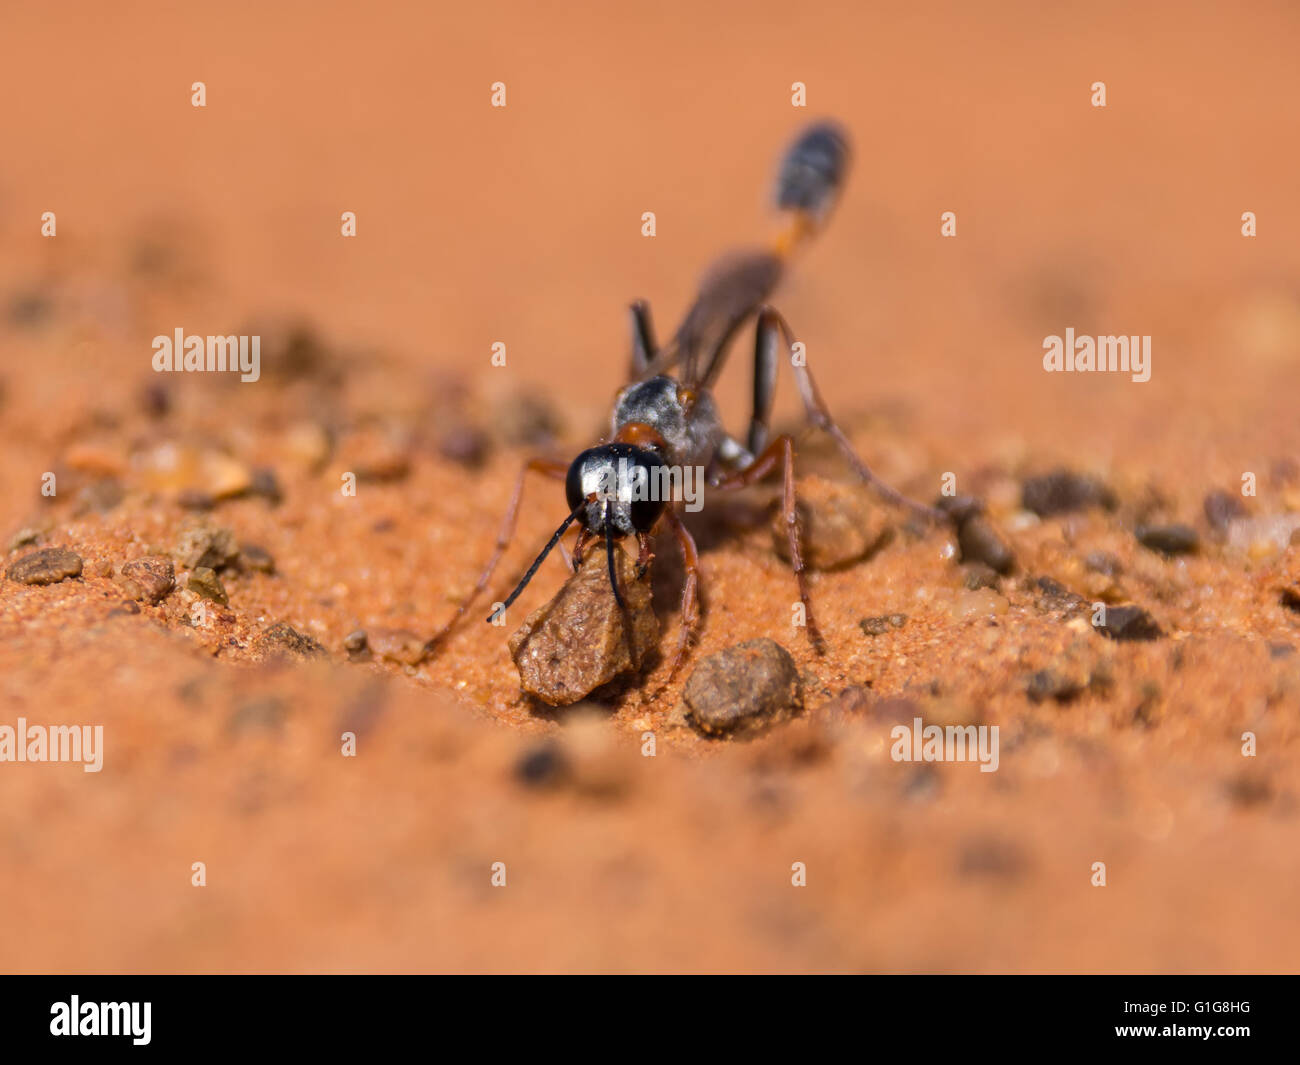 Un primo piano di un Ammophila wasp nel processo di scavare un nido nella sabbia rossa in Sud Africa Foto Stock